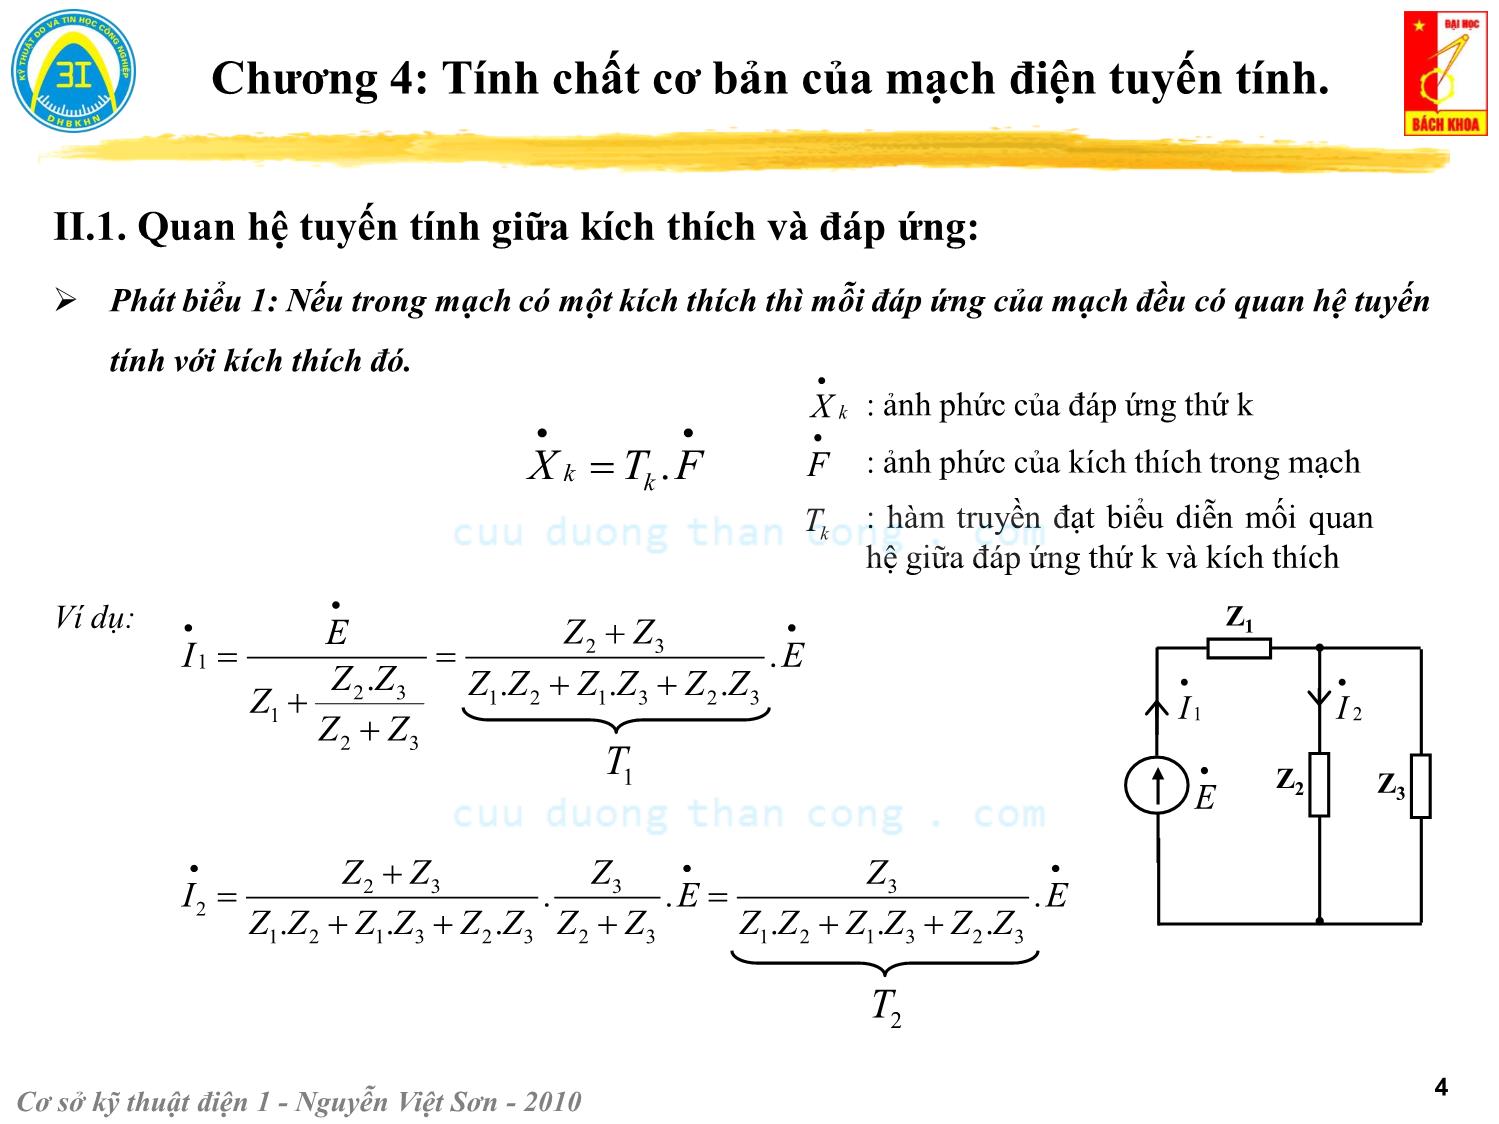 Bài giảng Kỹ thuật điện 1 - Chương 4: Tính chất cơ bản của mạch điện tuyến tính - Nguyễn Việt Sơn trang 4